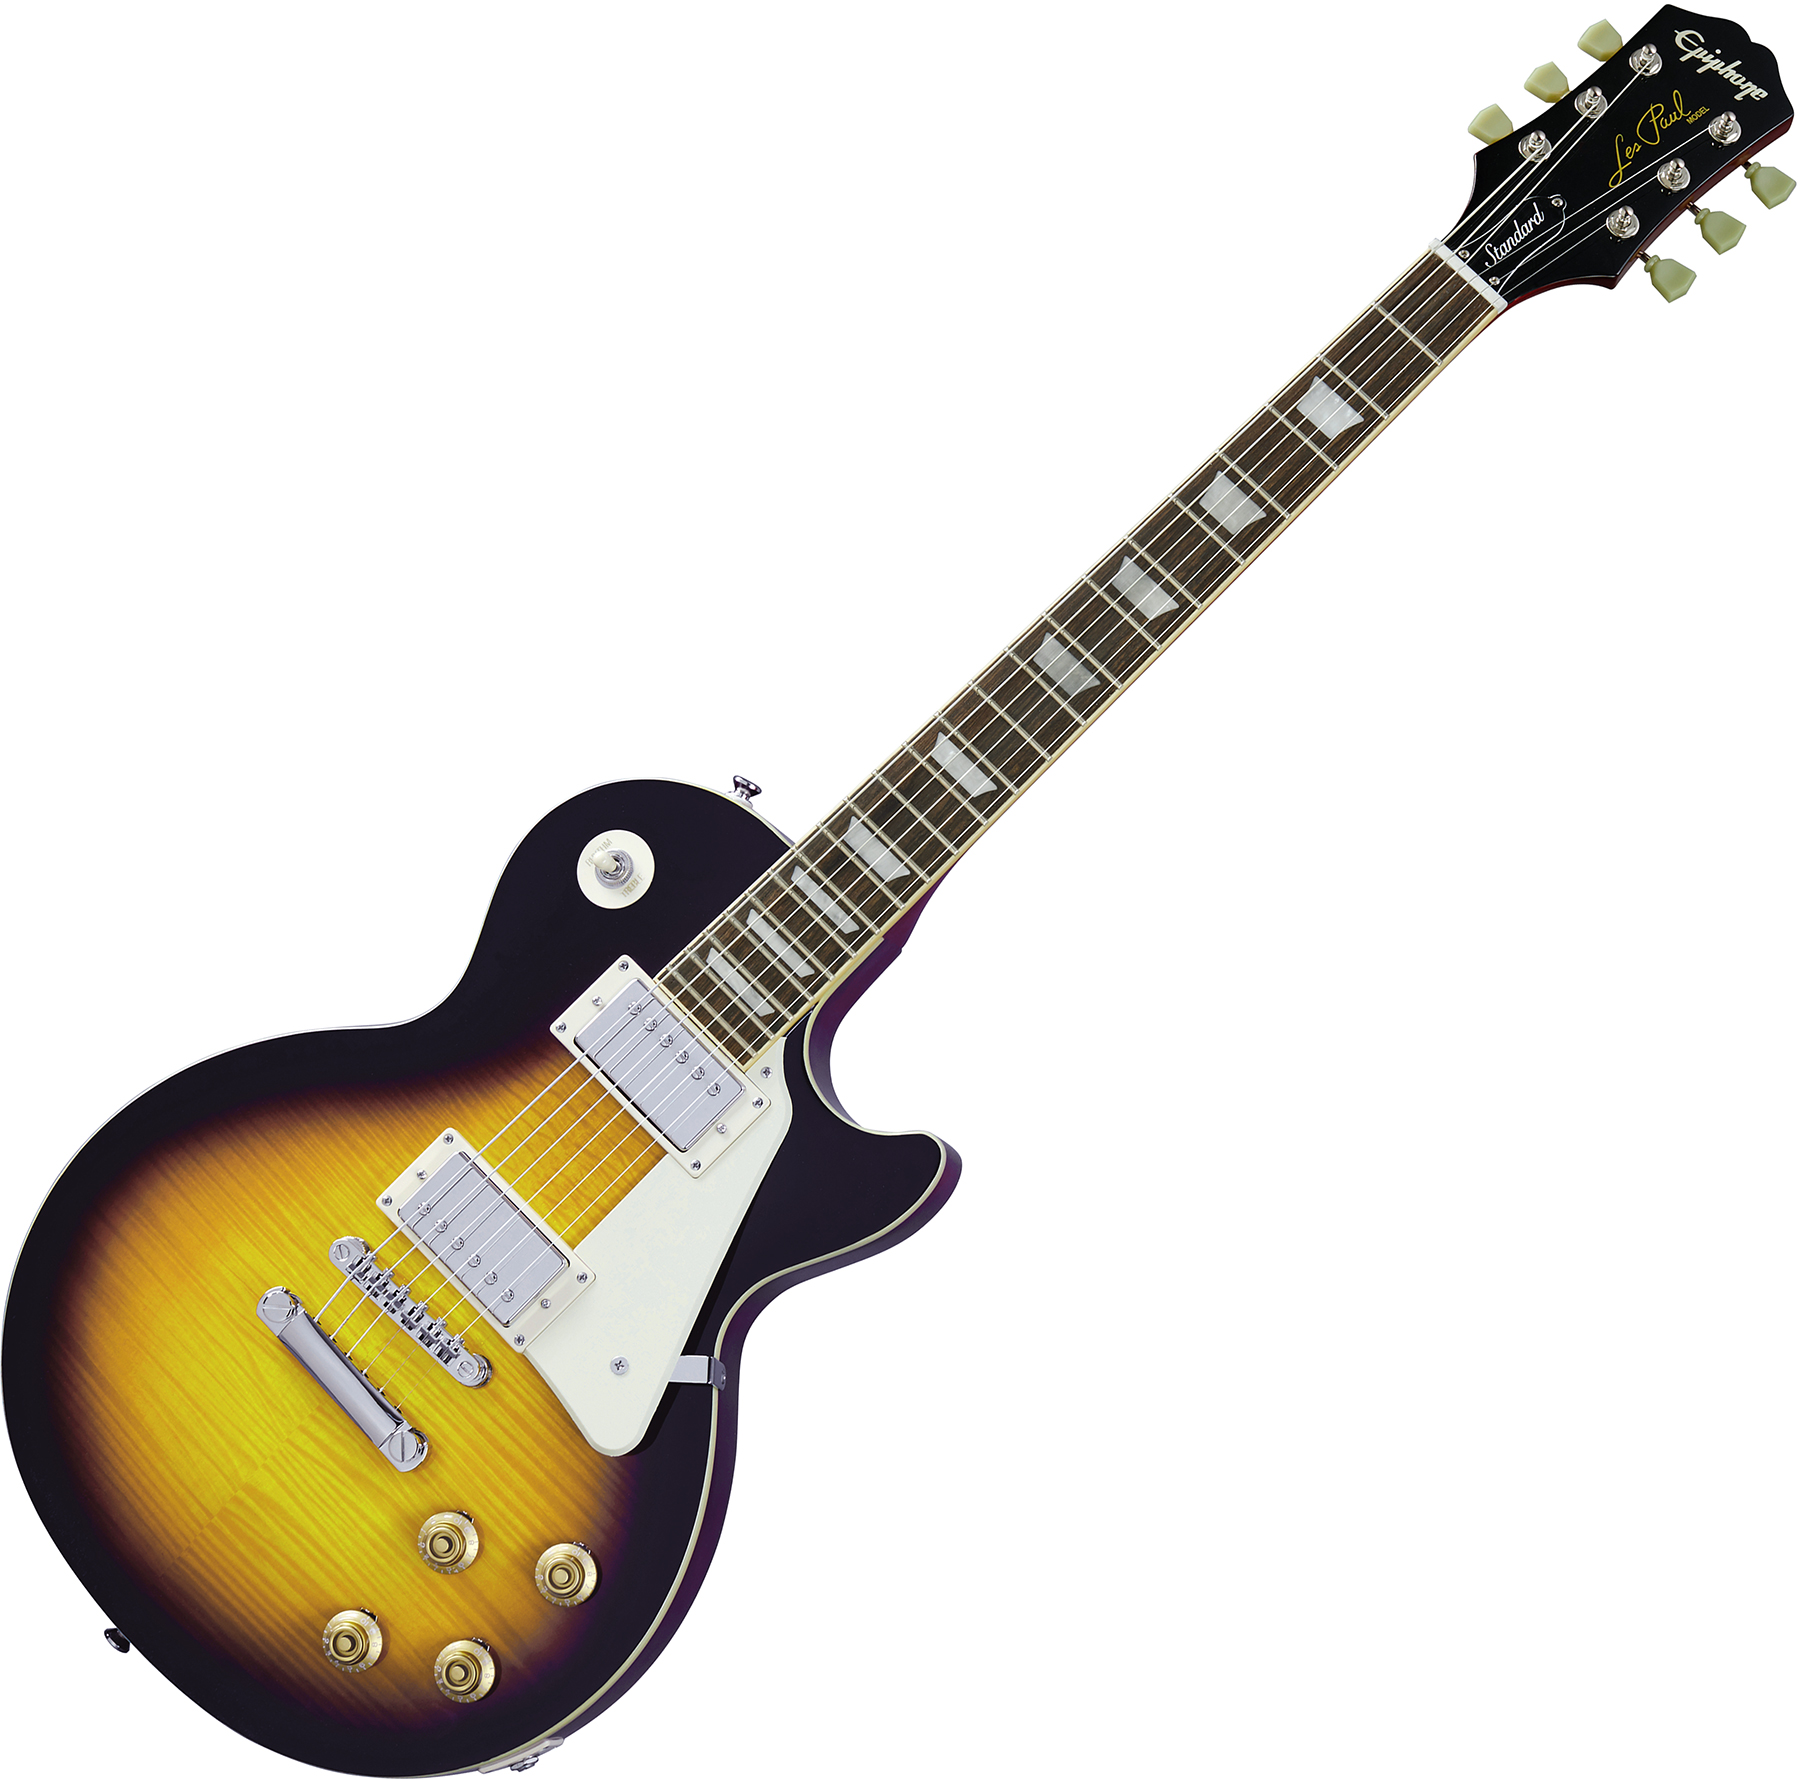 Epiphone Les Paul Standard 50s 2h Ht Rw - Vintage Sunburst - Single cut electric guitar - Variation 3